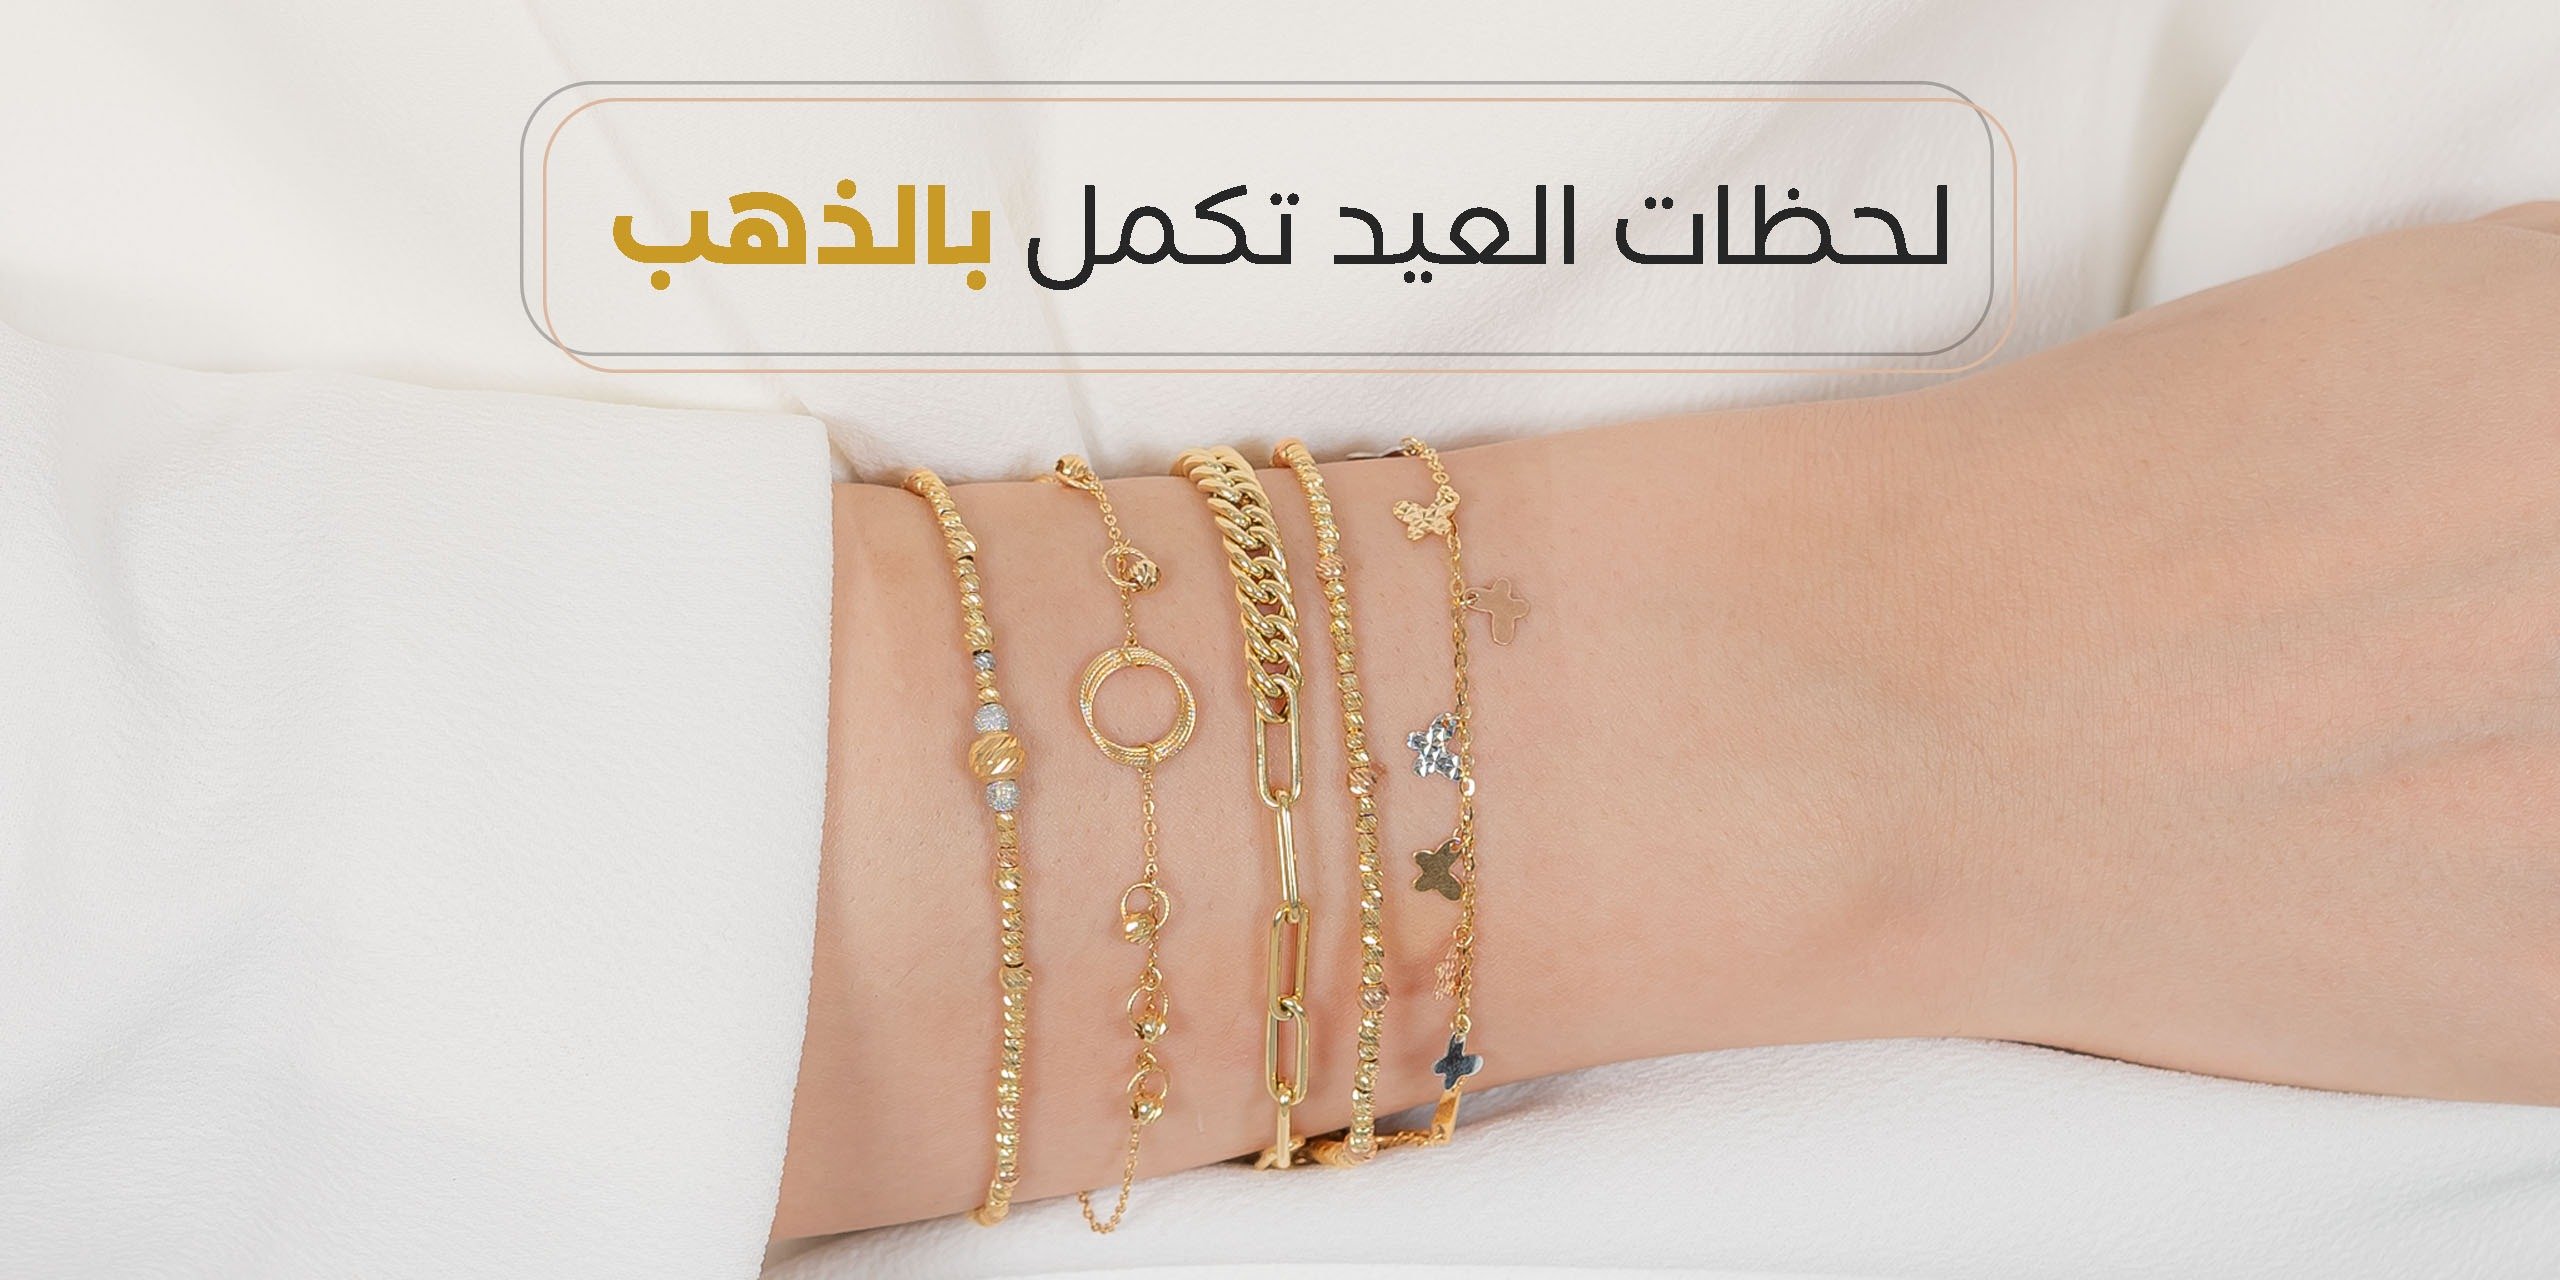 لمعة اللؤلؤة LOLWA GOLD - قسيمة تخفيض مجوهرات لمعة الؤلؤة للهدايا العيد صفقات مميزة